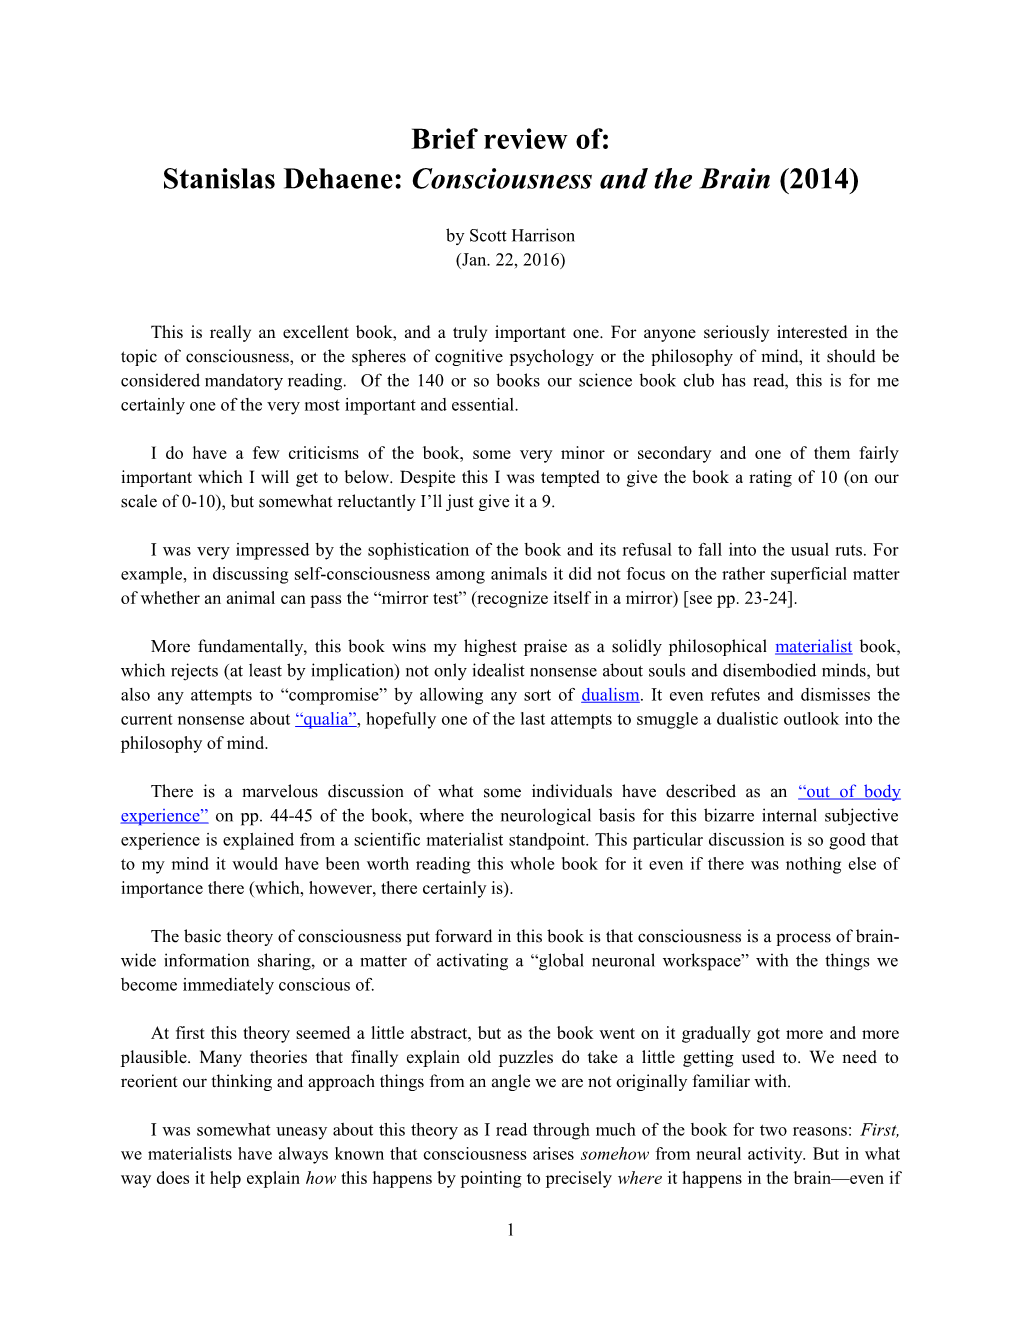 Stanislas Dehaene: Consciousness and the Brain (2014)